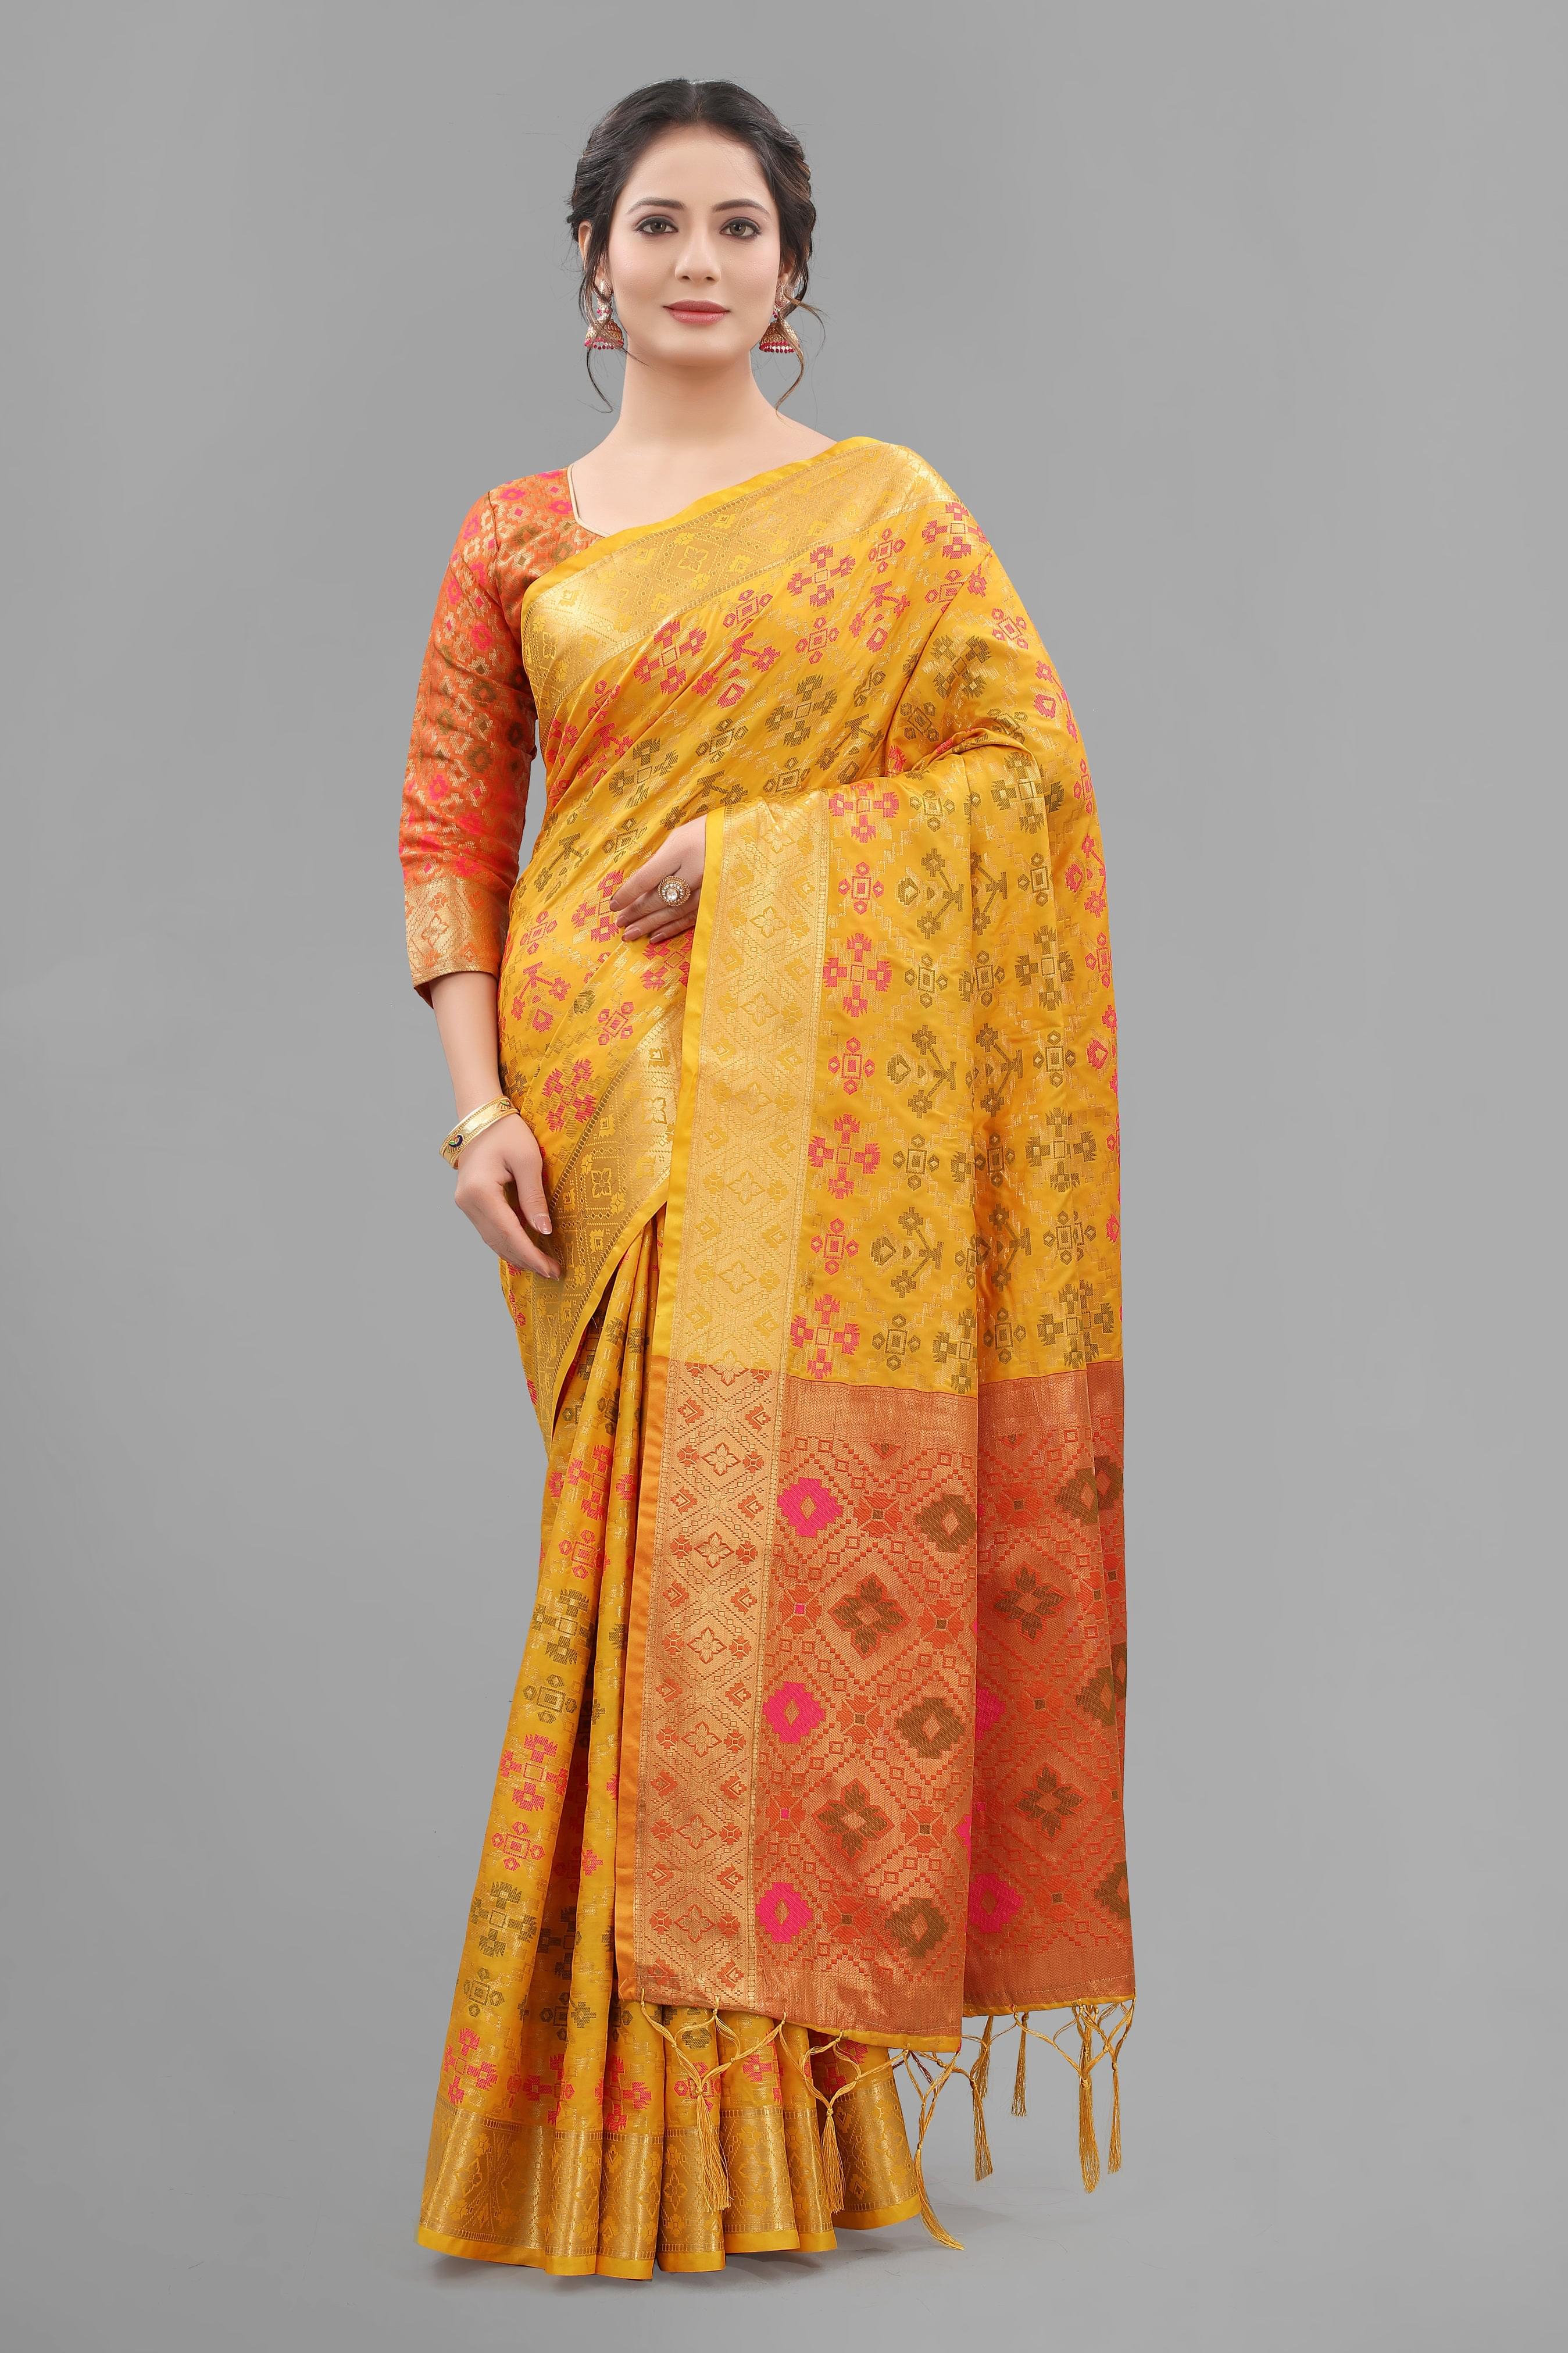 Hot Yellow Color Soft Lichi Silk Patolla Design Jacquard Saree